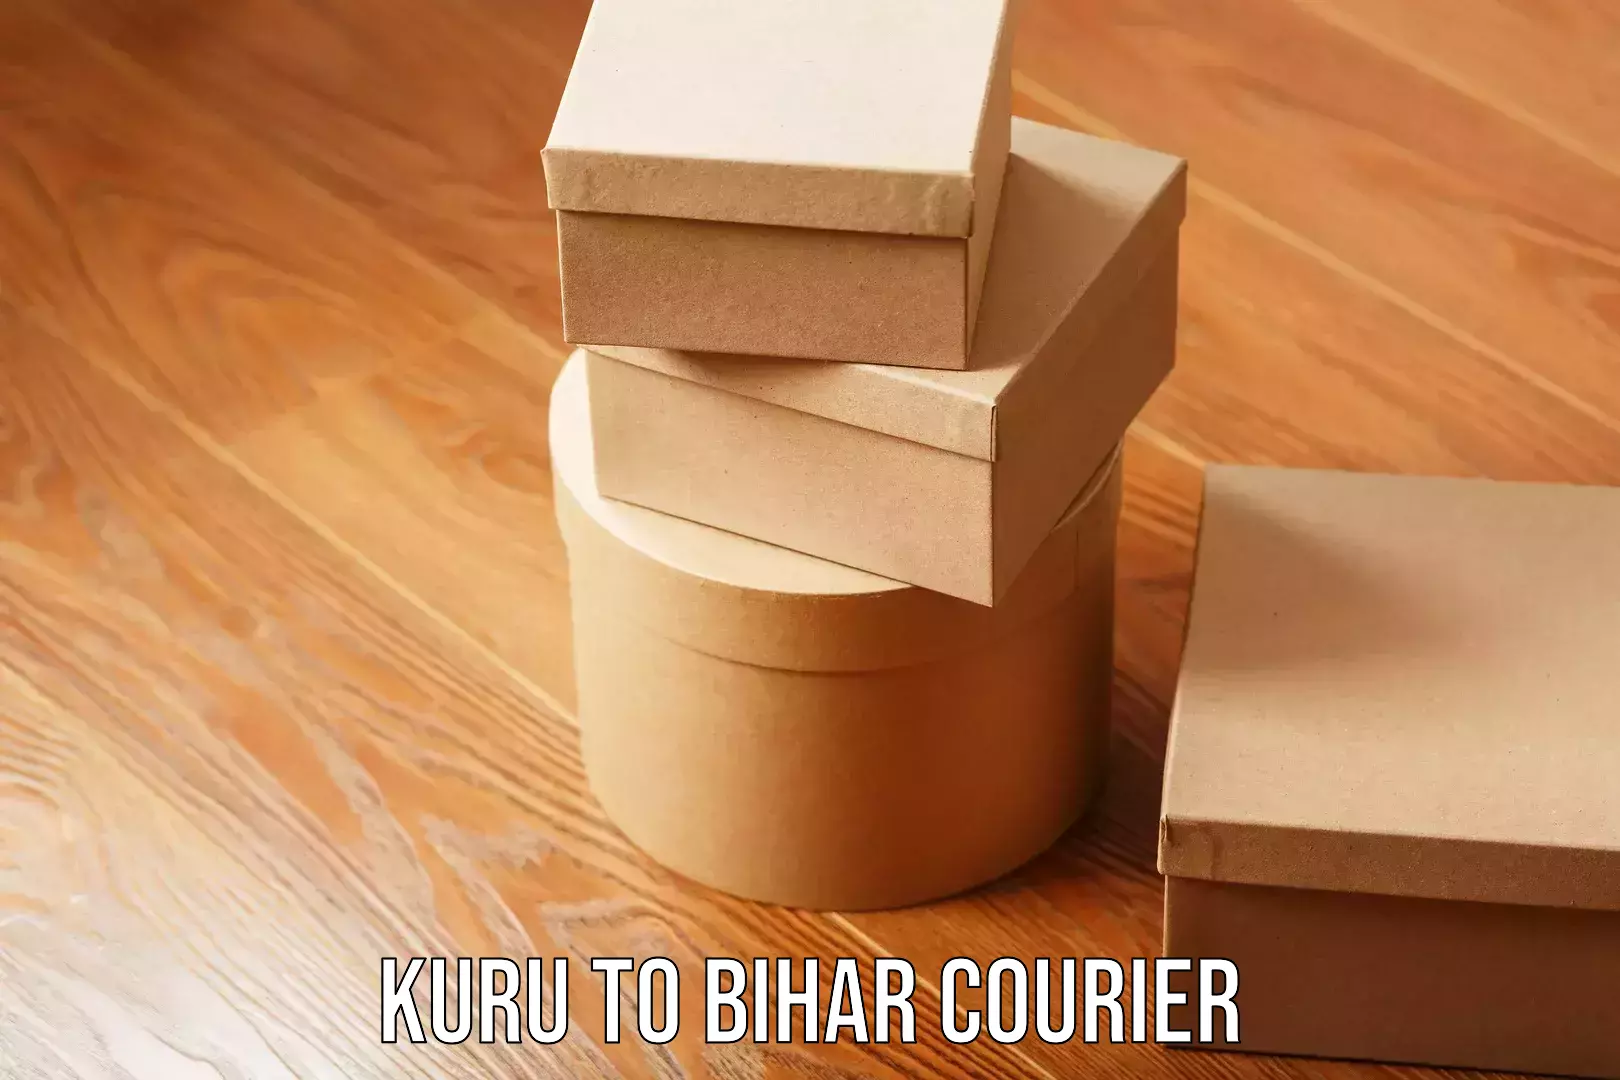 Full-service furniture transport in Kuru to Bihar